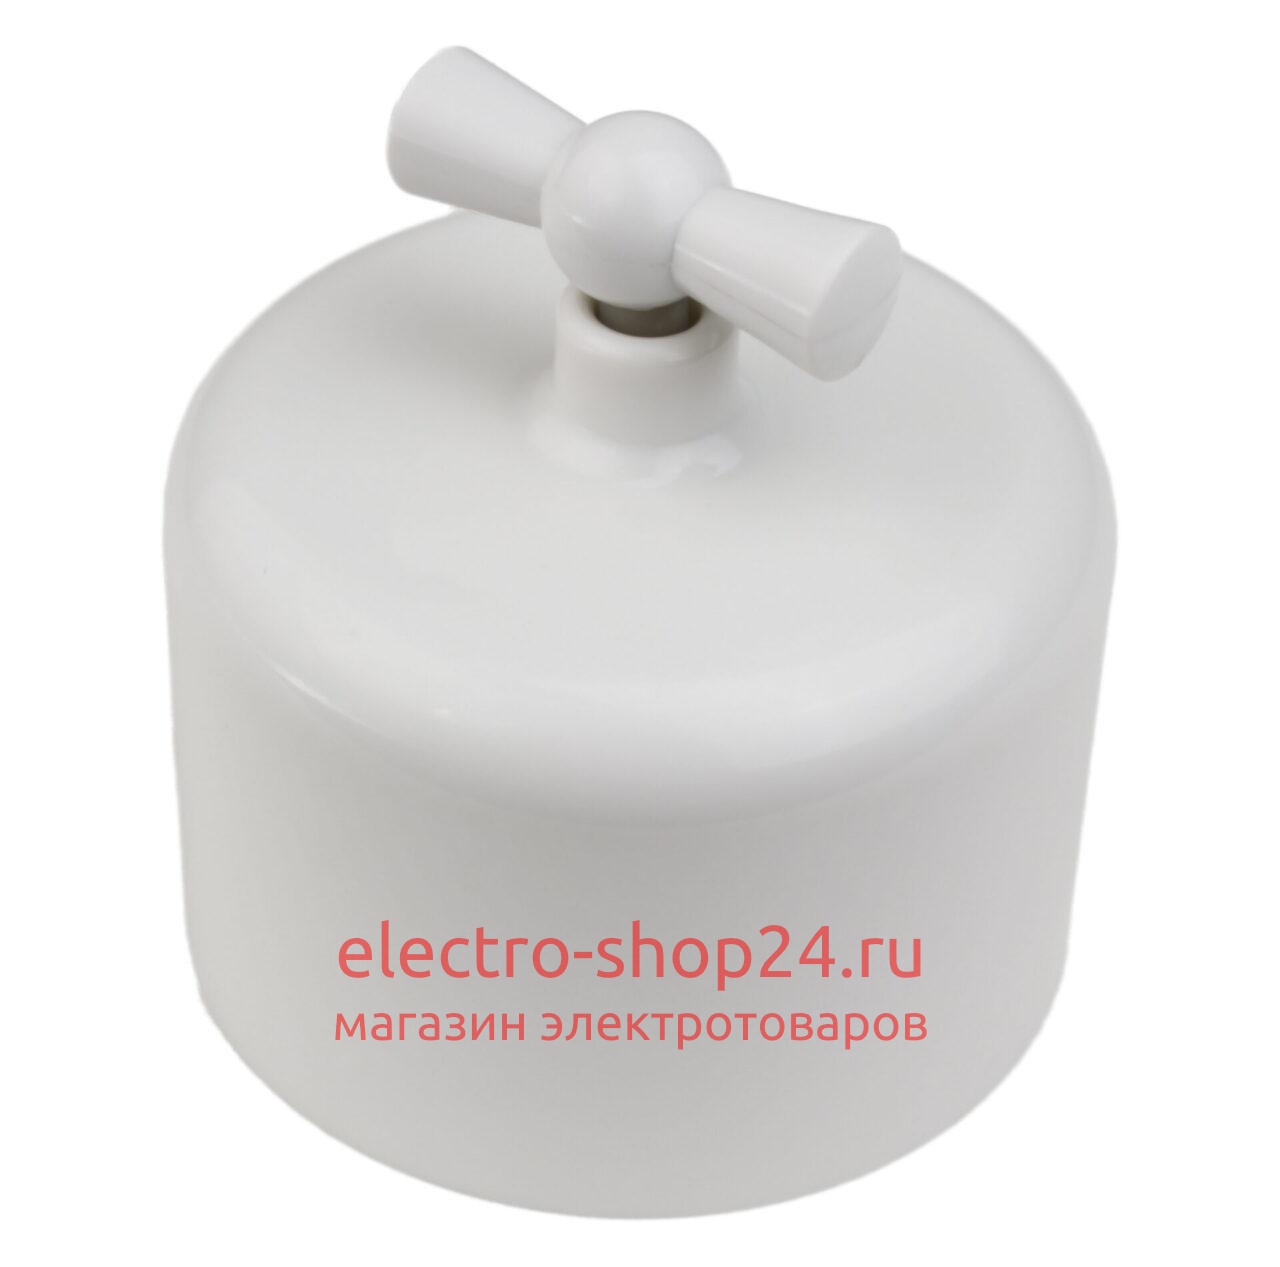 Выключатель 1-клавишный Bironi Ришелье пластик белый R1-210-21 R1-210-21 - магазин электротехники Electroshop